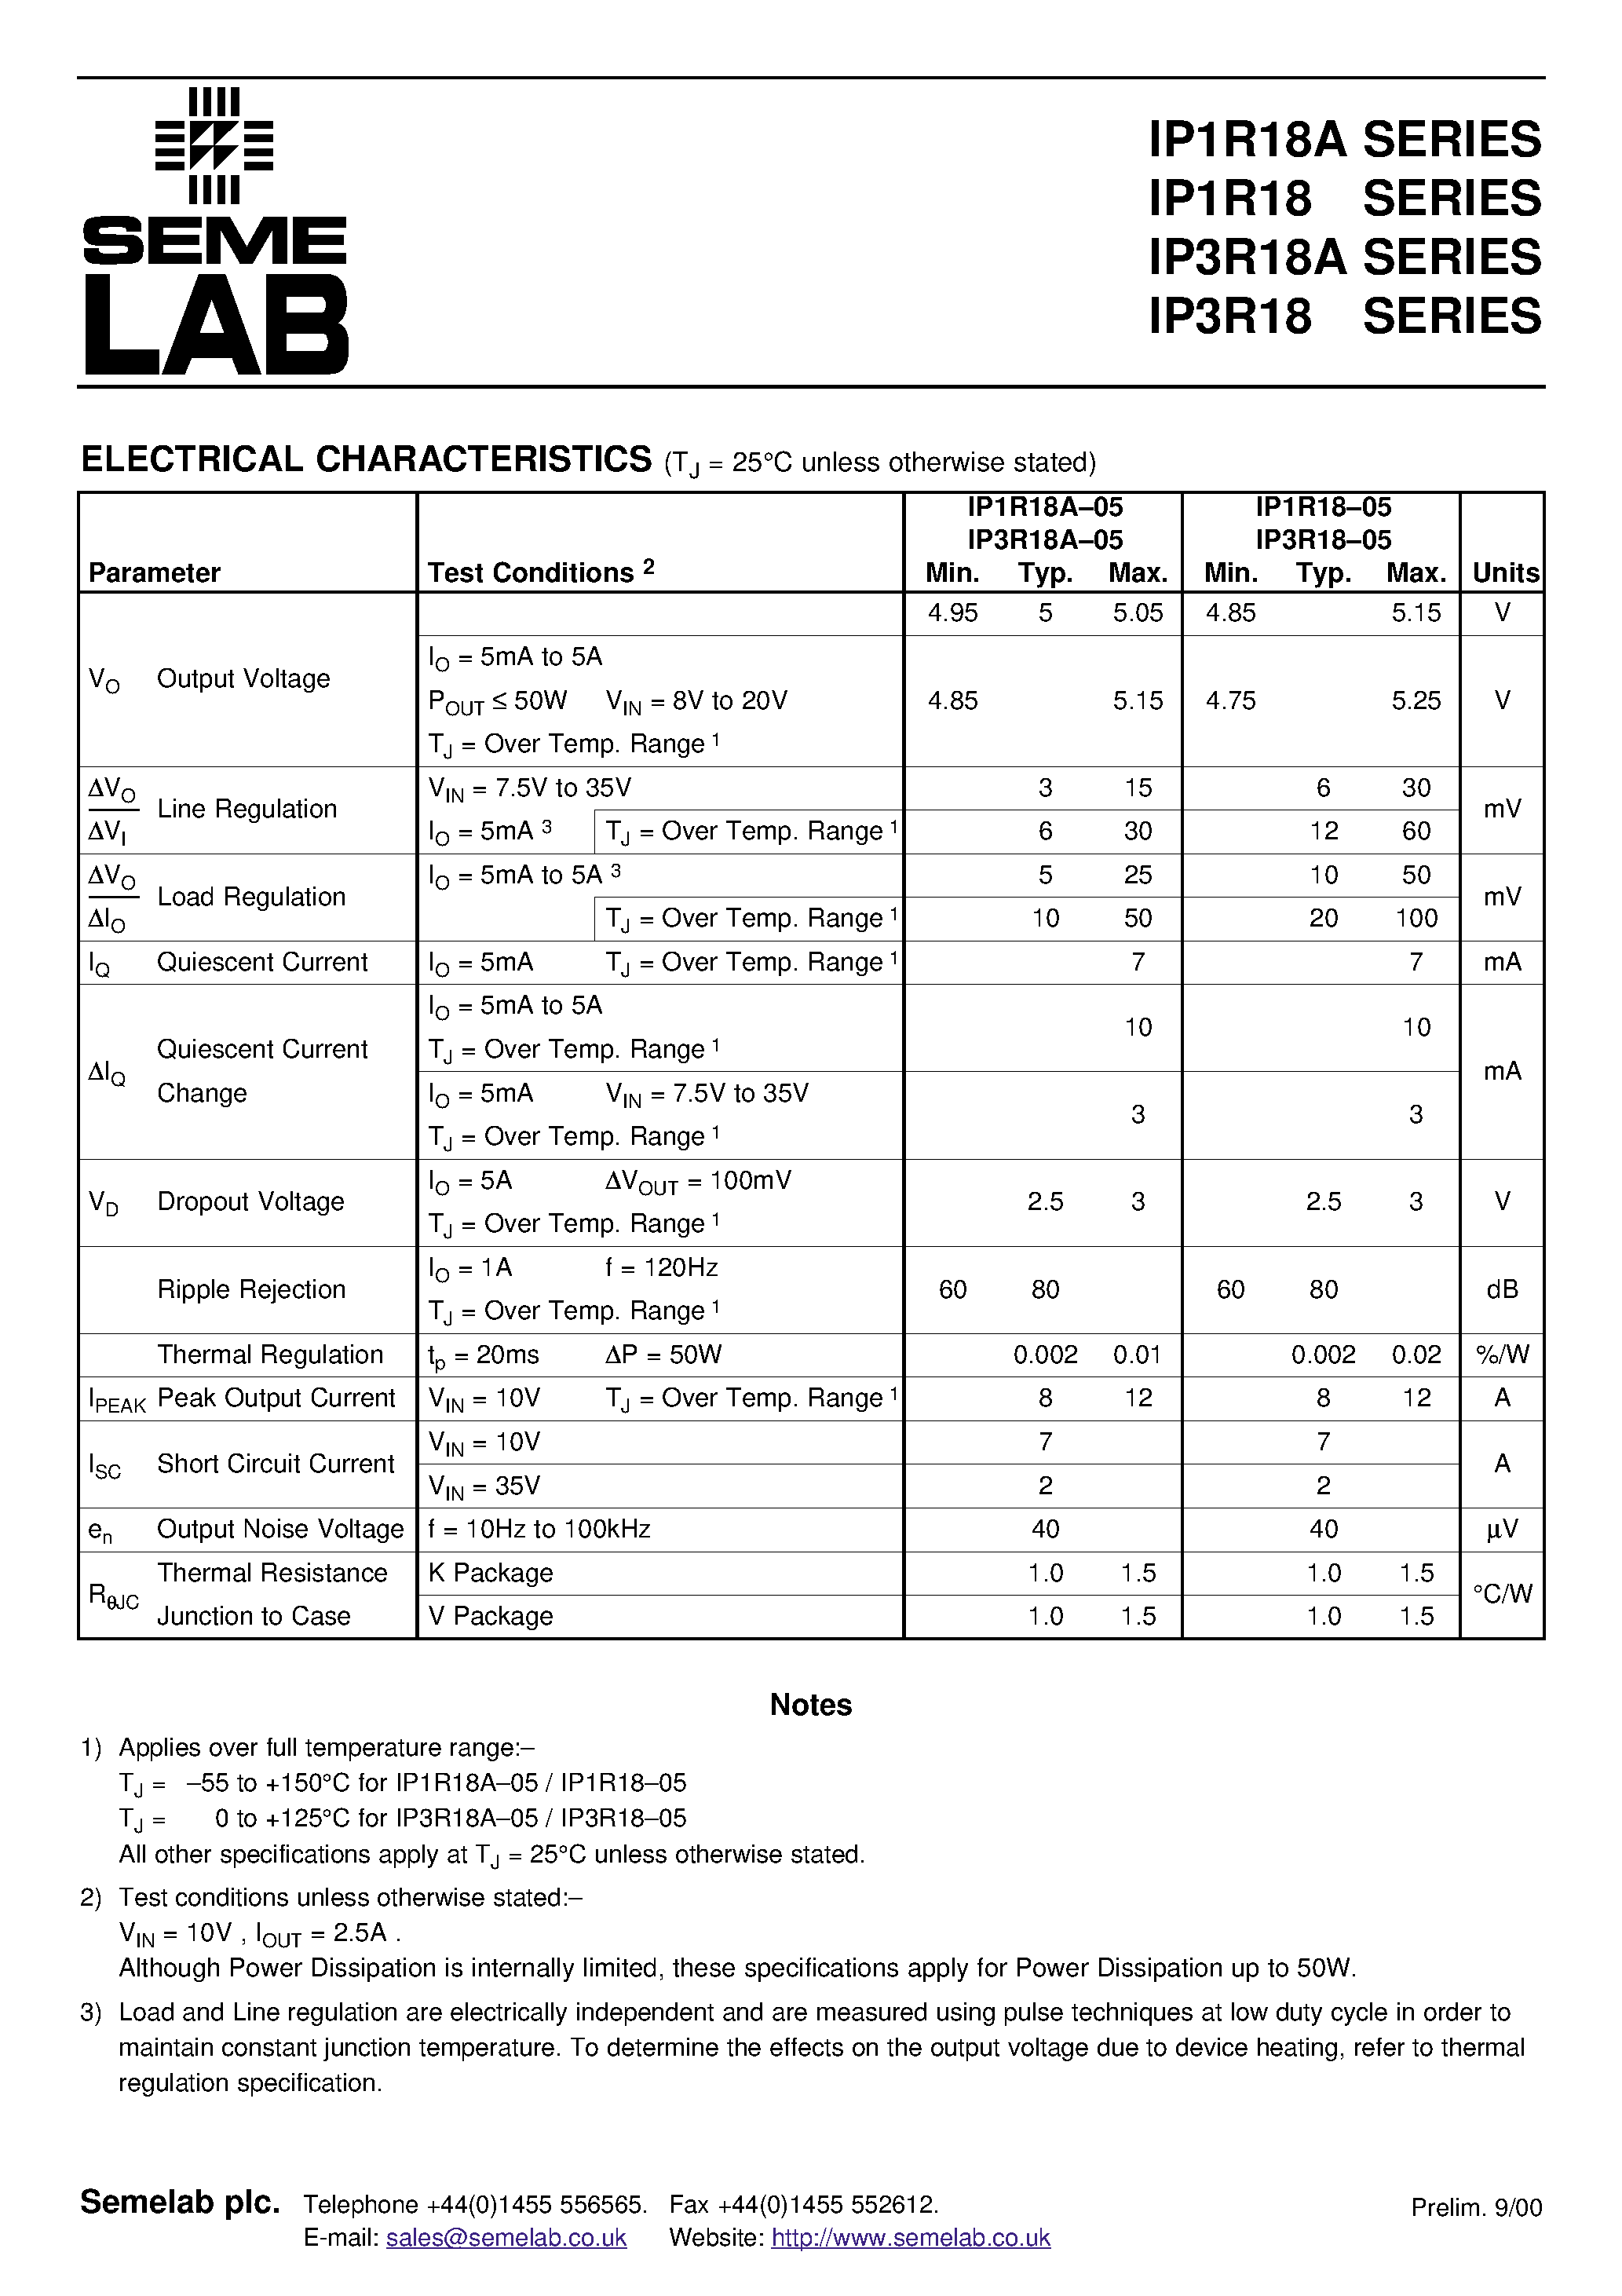 Datasheet IP1R18A15-V - 5 AMP POSITIVE VOLTAGE REGULATORS page 2